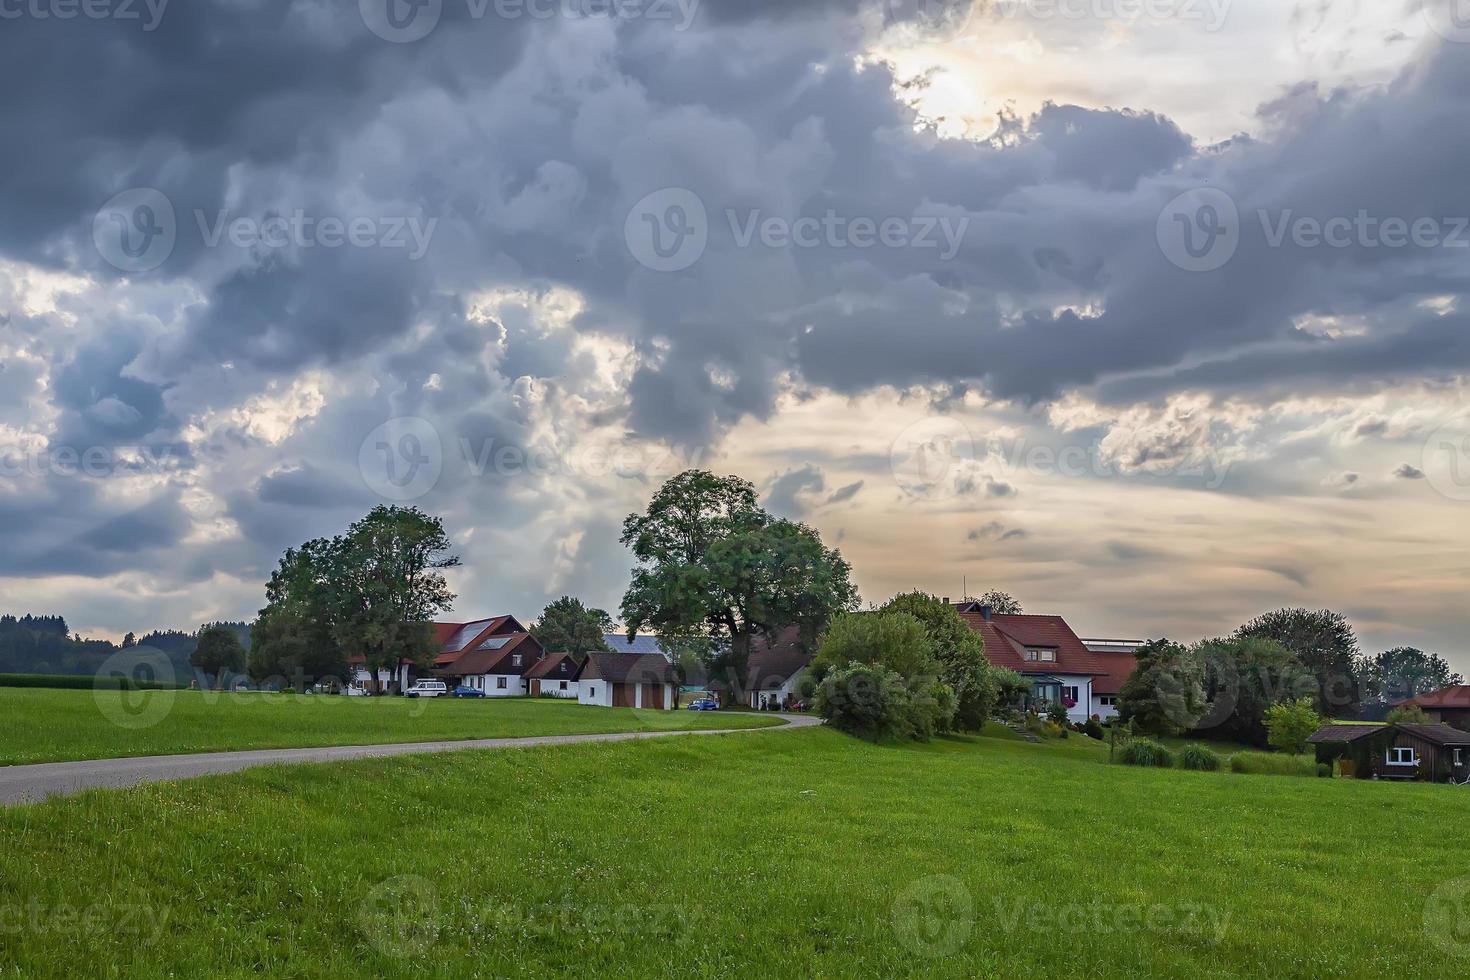 paisagem idílica com greenfield, estrada e casas tradicionais alemãs. foto